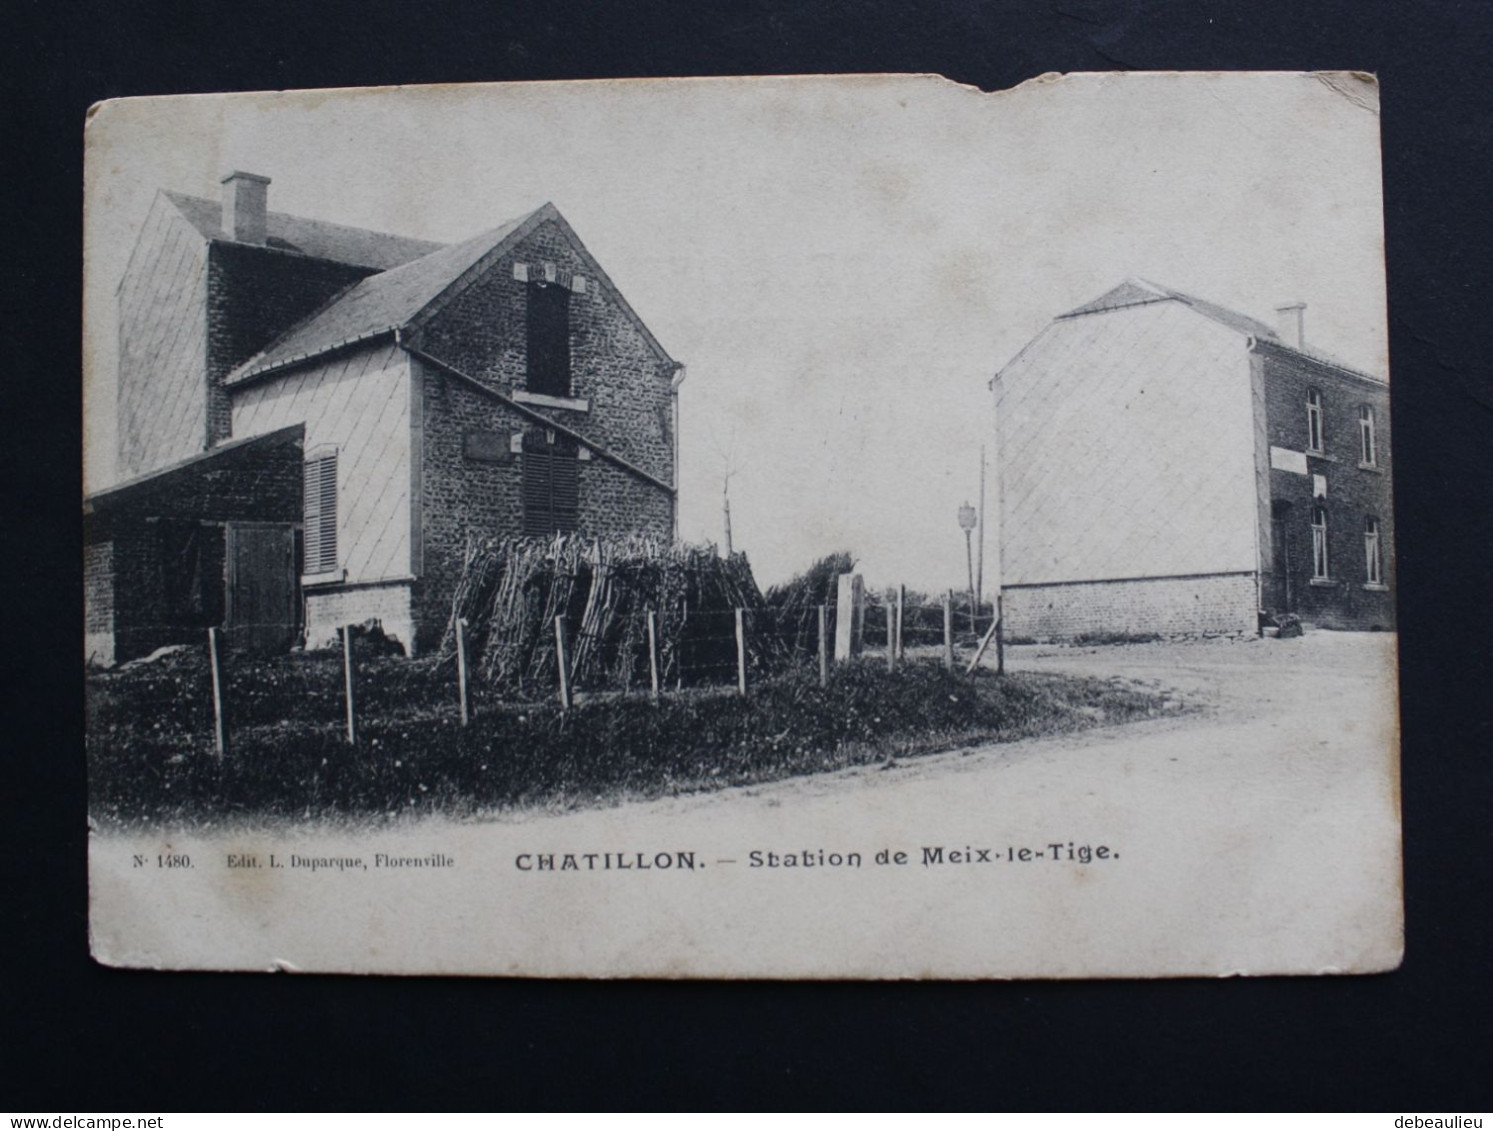 Chatillon - Station De Meix-le-Tige , Edit L. Duparque, Florenville - Saint-Léger